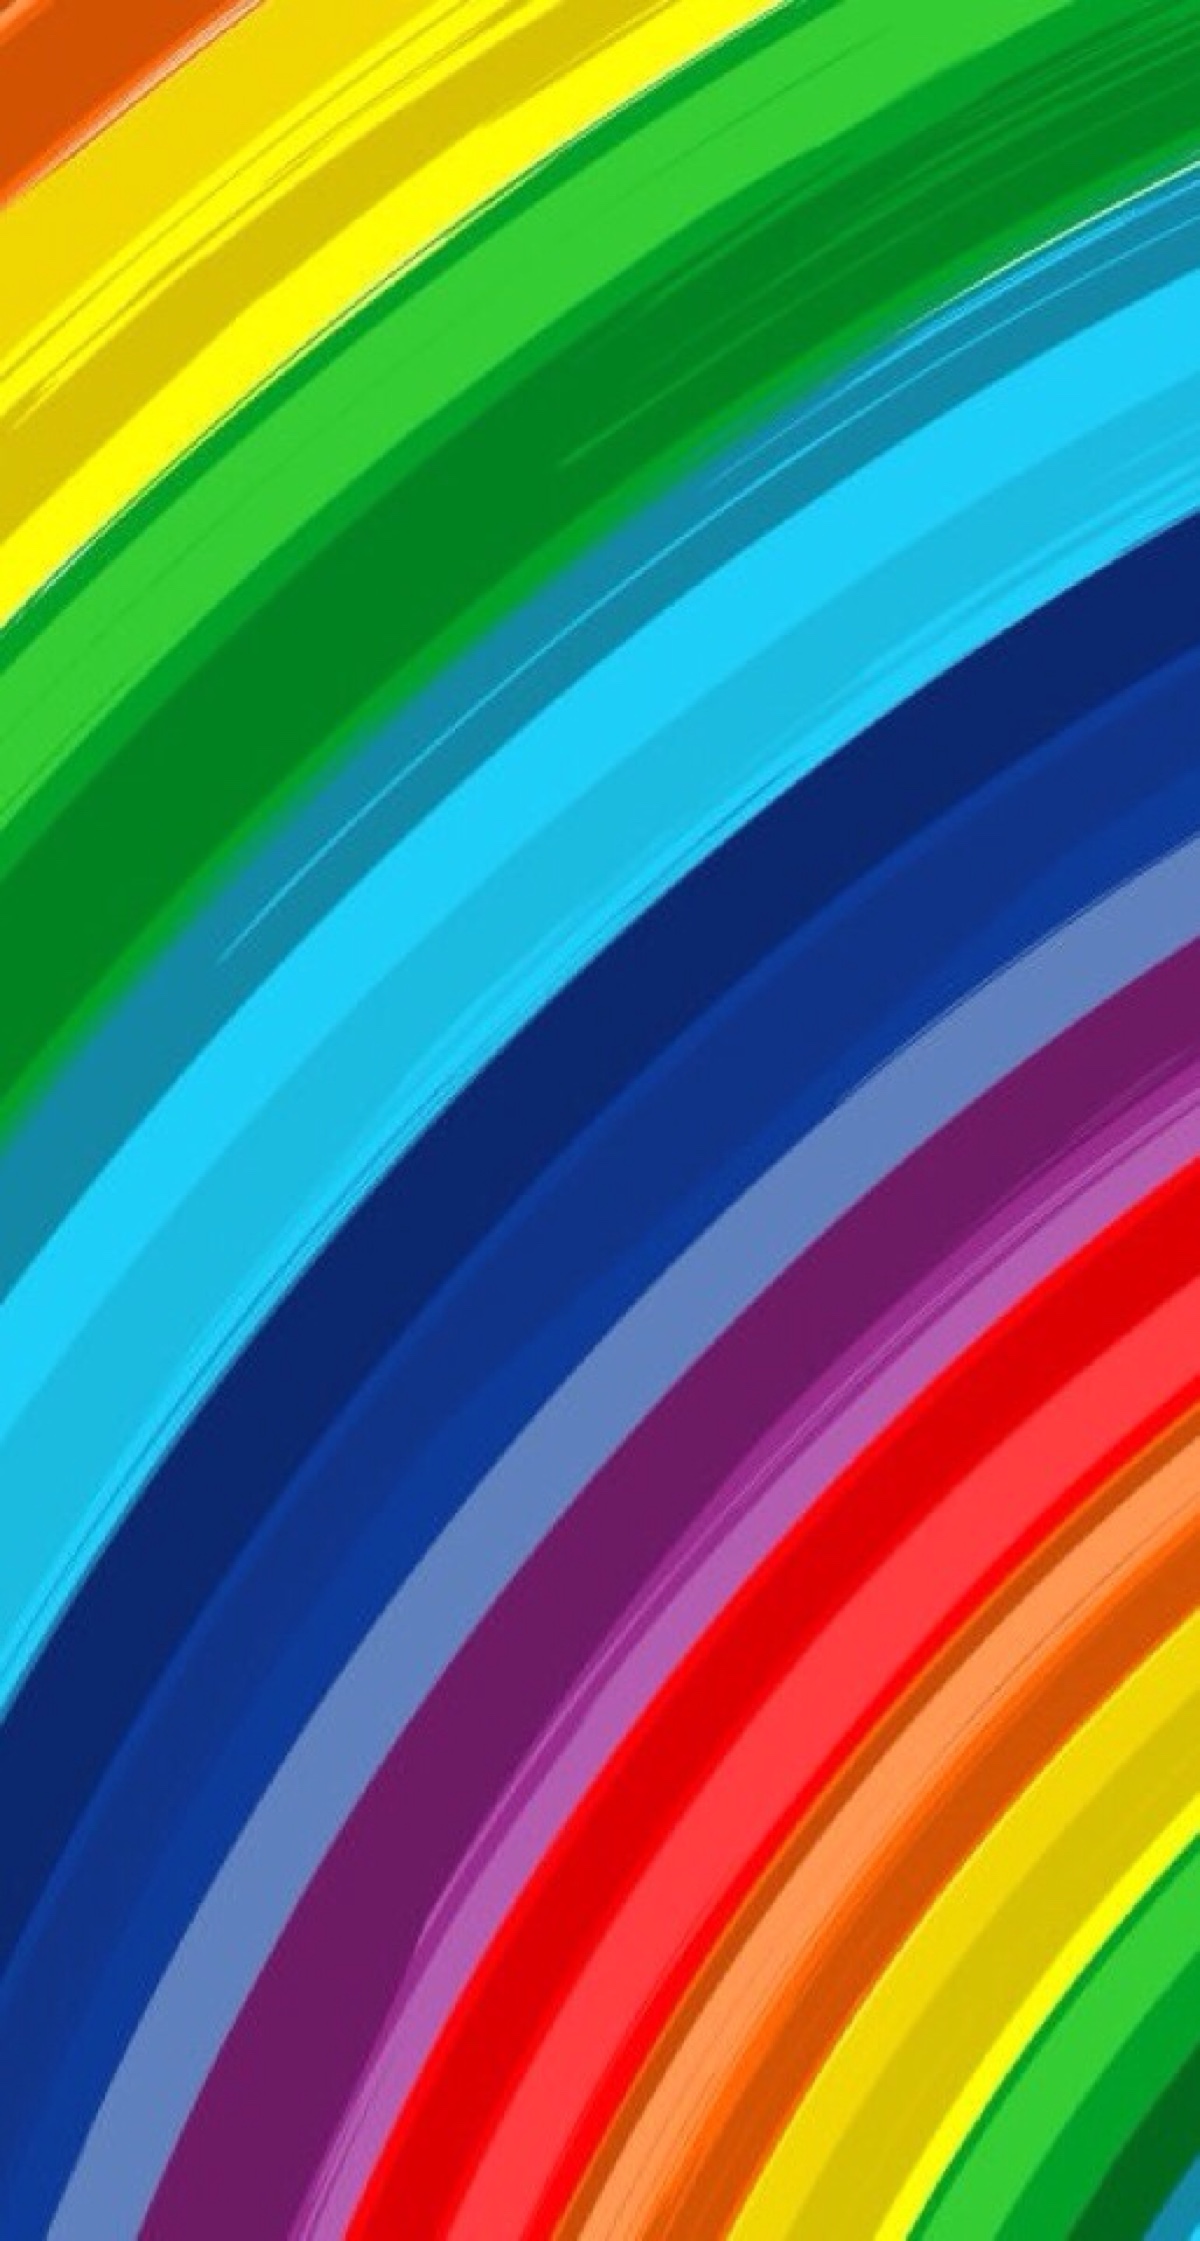 六色彩虹背景图图片